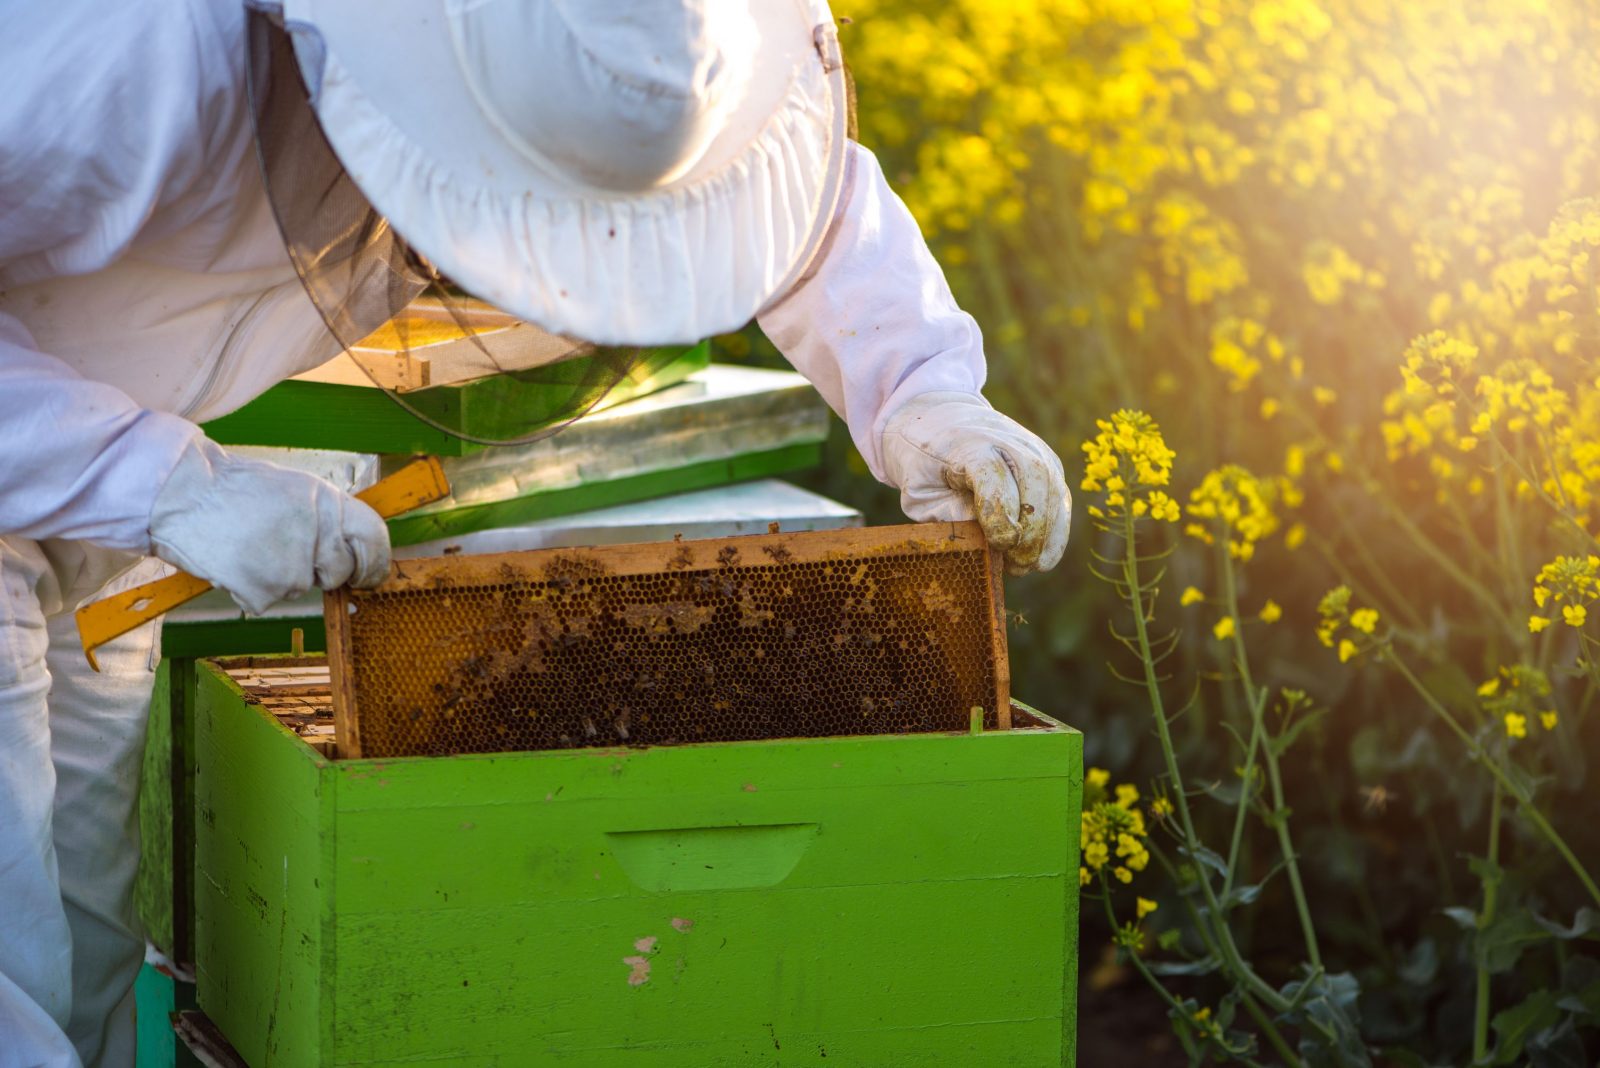 Des temps durs pour l’apiculture